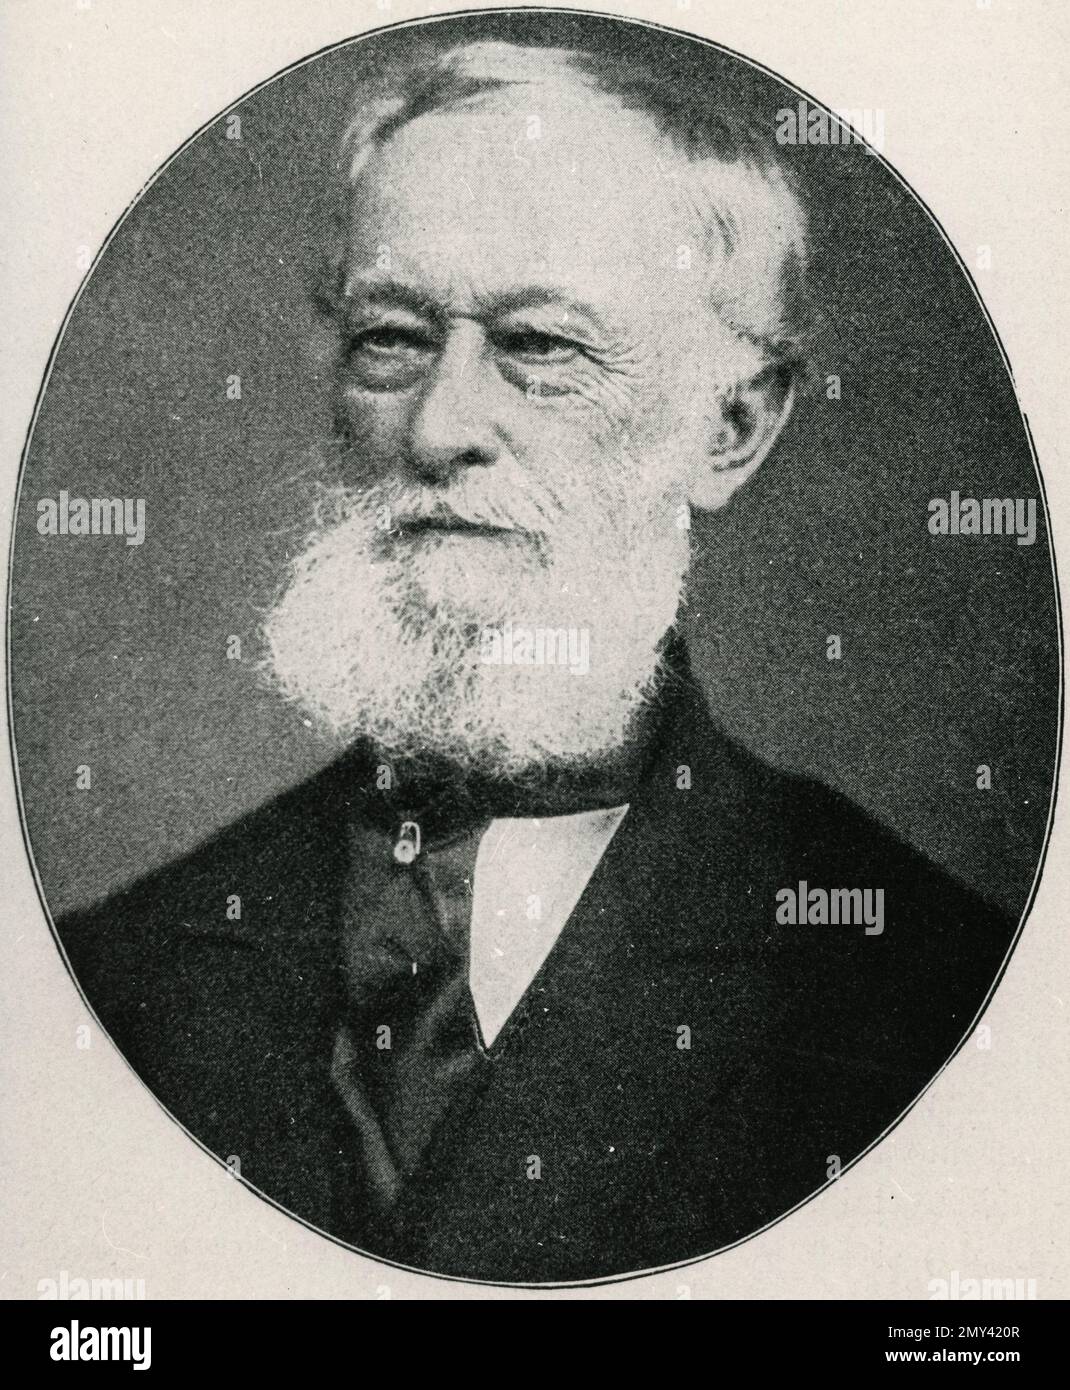 Alfred Krupp, fabricant et inventeur allemand d'acier, Allemagne 1840s Banque D'Images